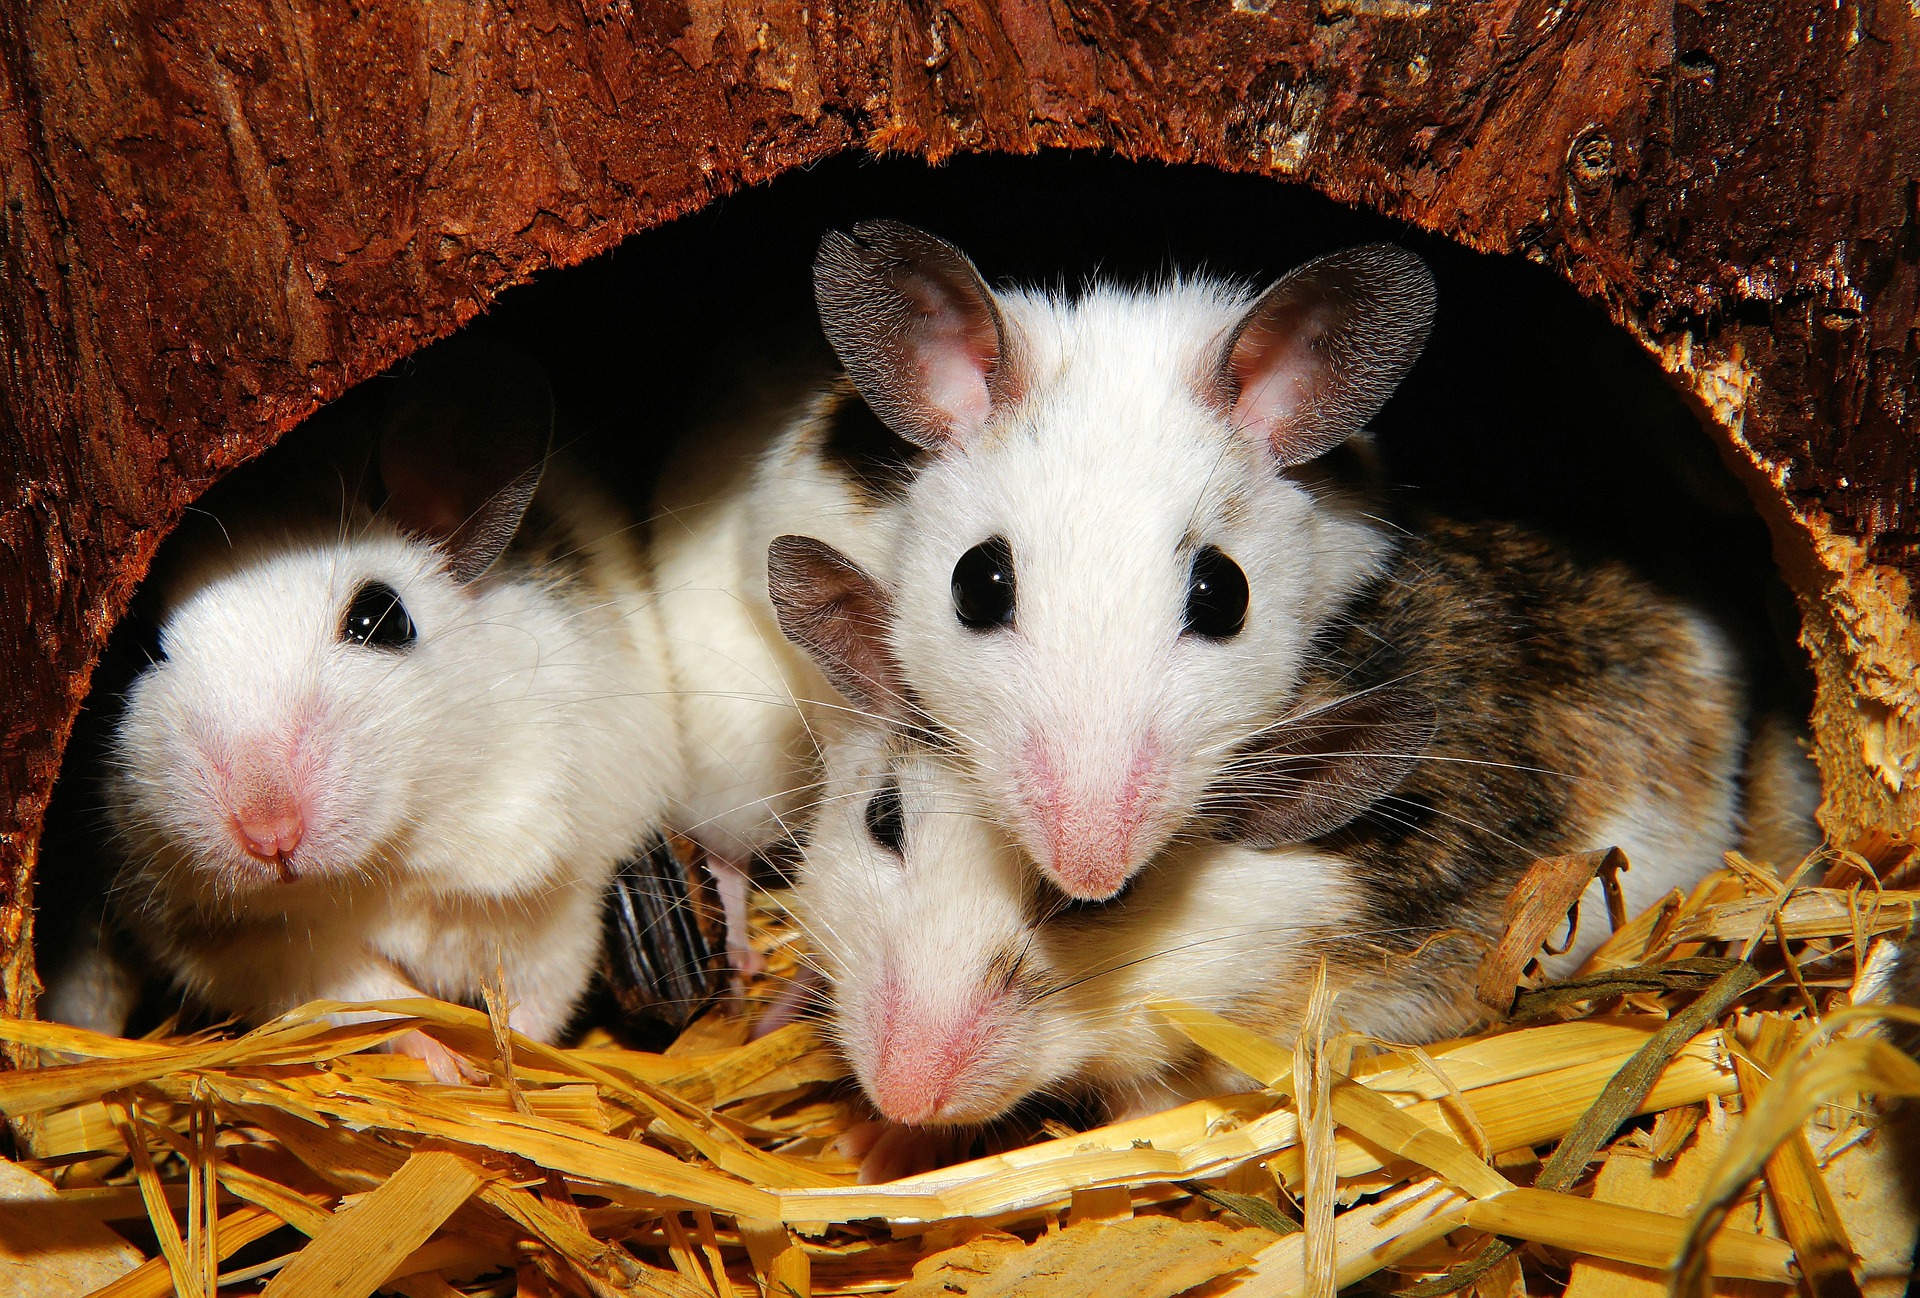 Muizen ruiken met wie ze bepaalde genen gemeen hebben. Die vinden ze het aardigst.